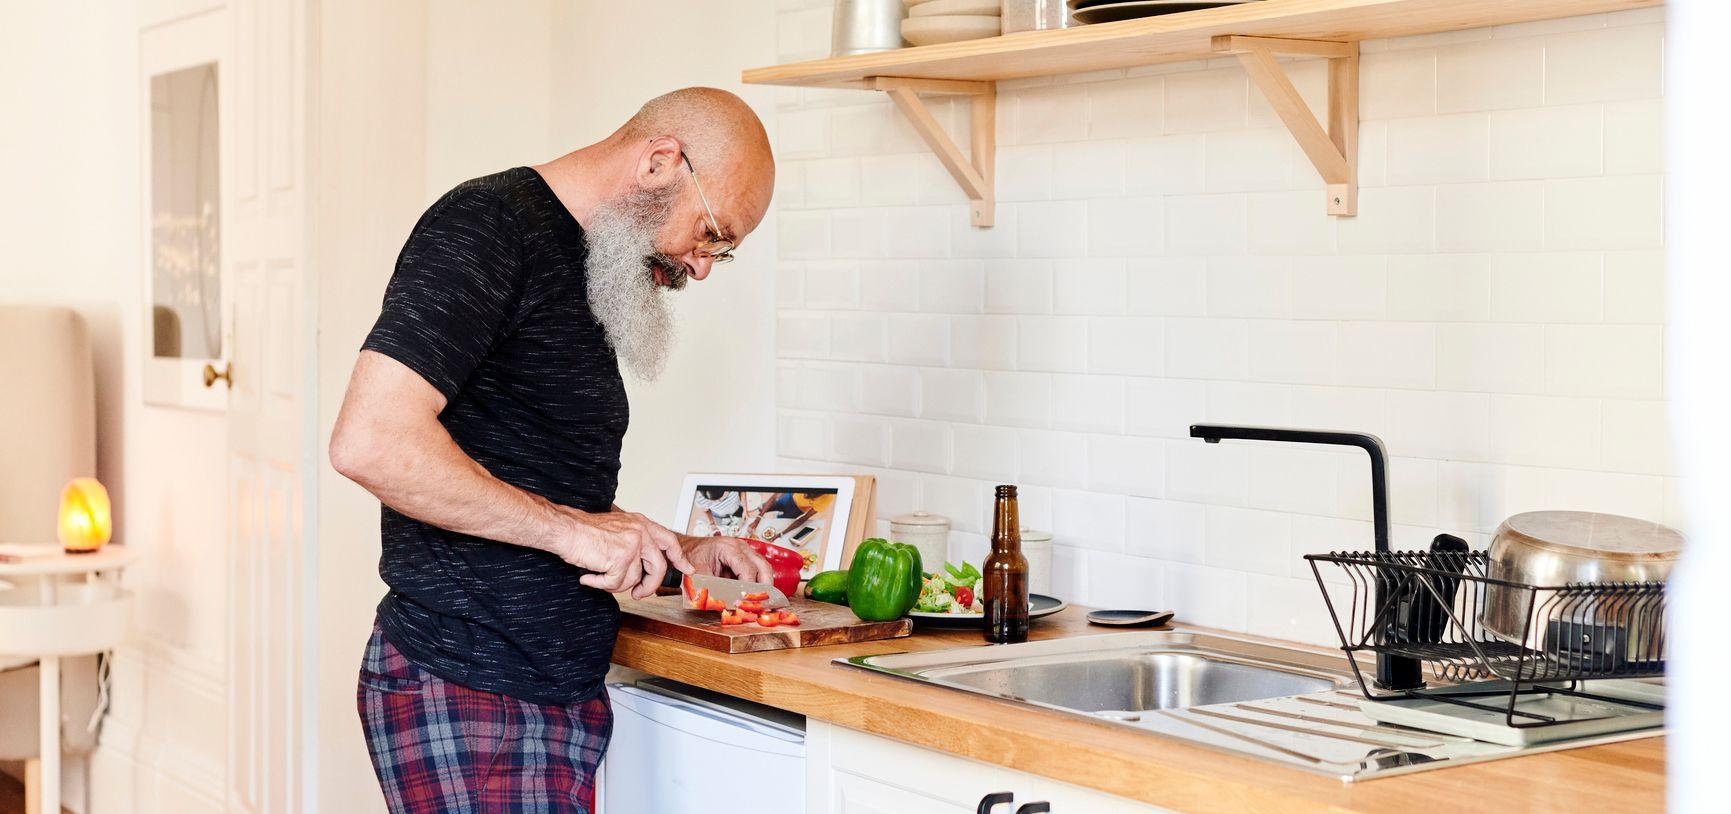 Man met lange baard staat in de keuken en snijdt groente.